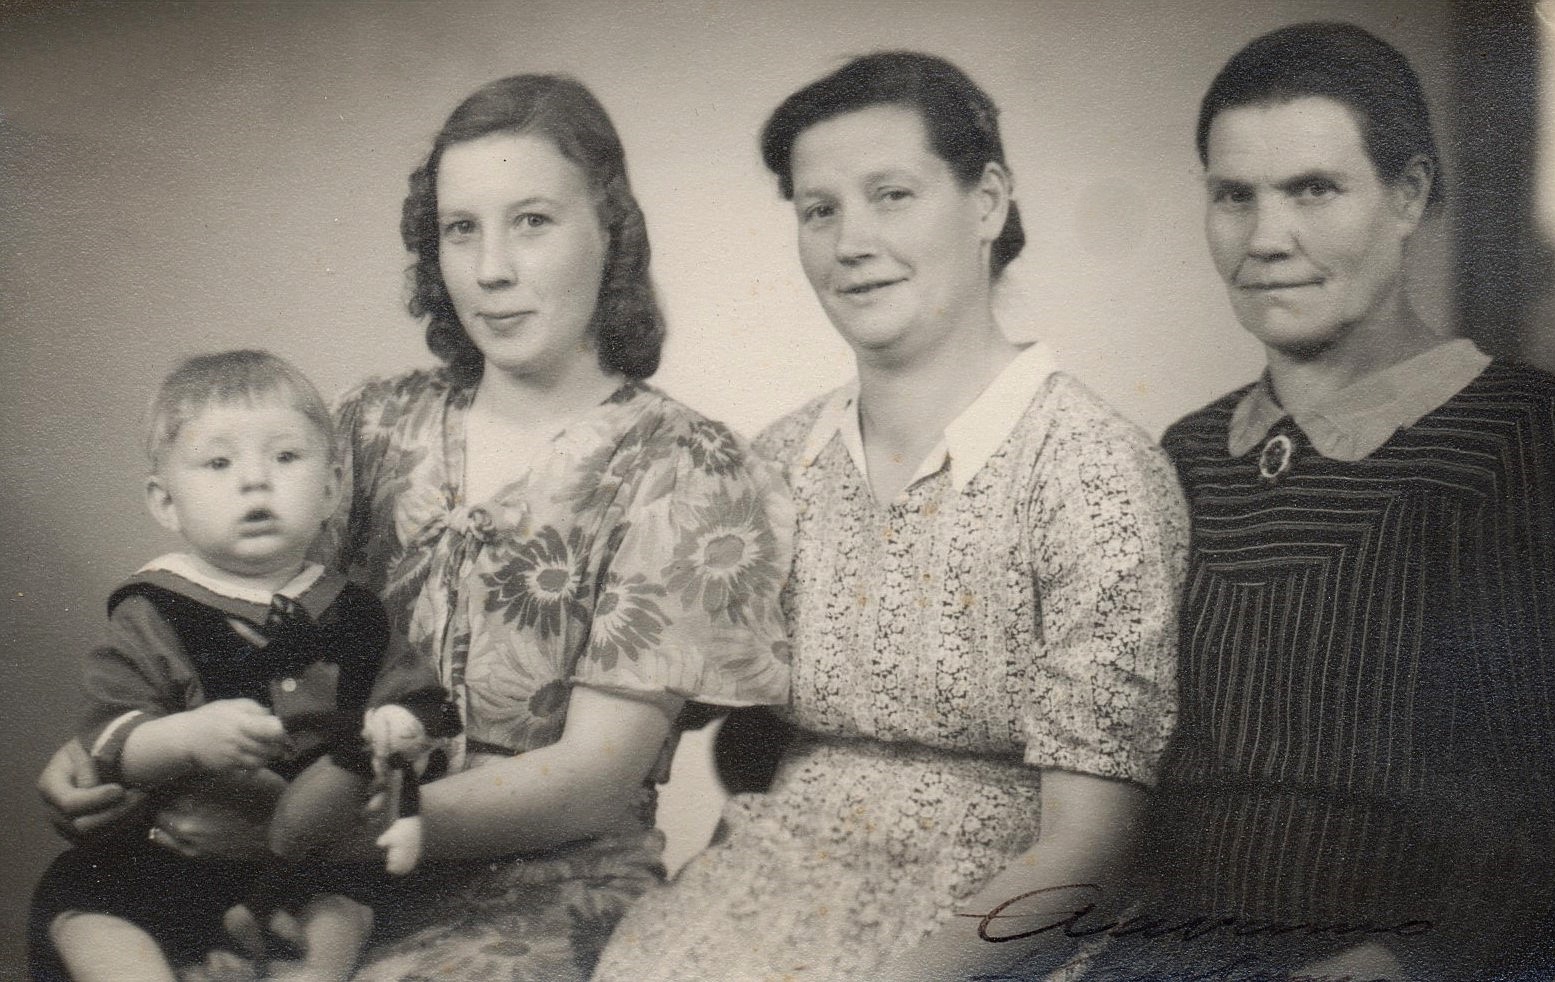 Det var inte riktigt vanligt med 4 generationer på samma foto i slutet på 1940-talet men här sitter lilla Olavi Niemi i famnen på mamma Elvi. Bredvid Elvi sitter mor Helmi Lövholm och till höger Elvis mormor.